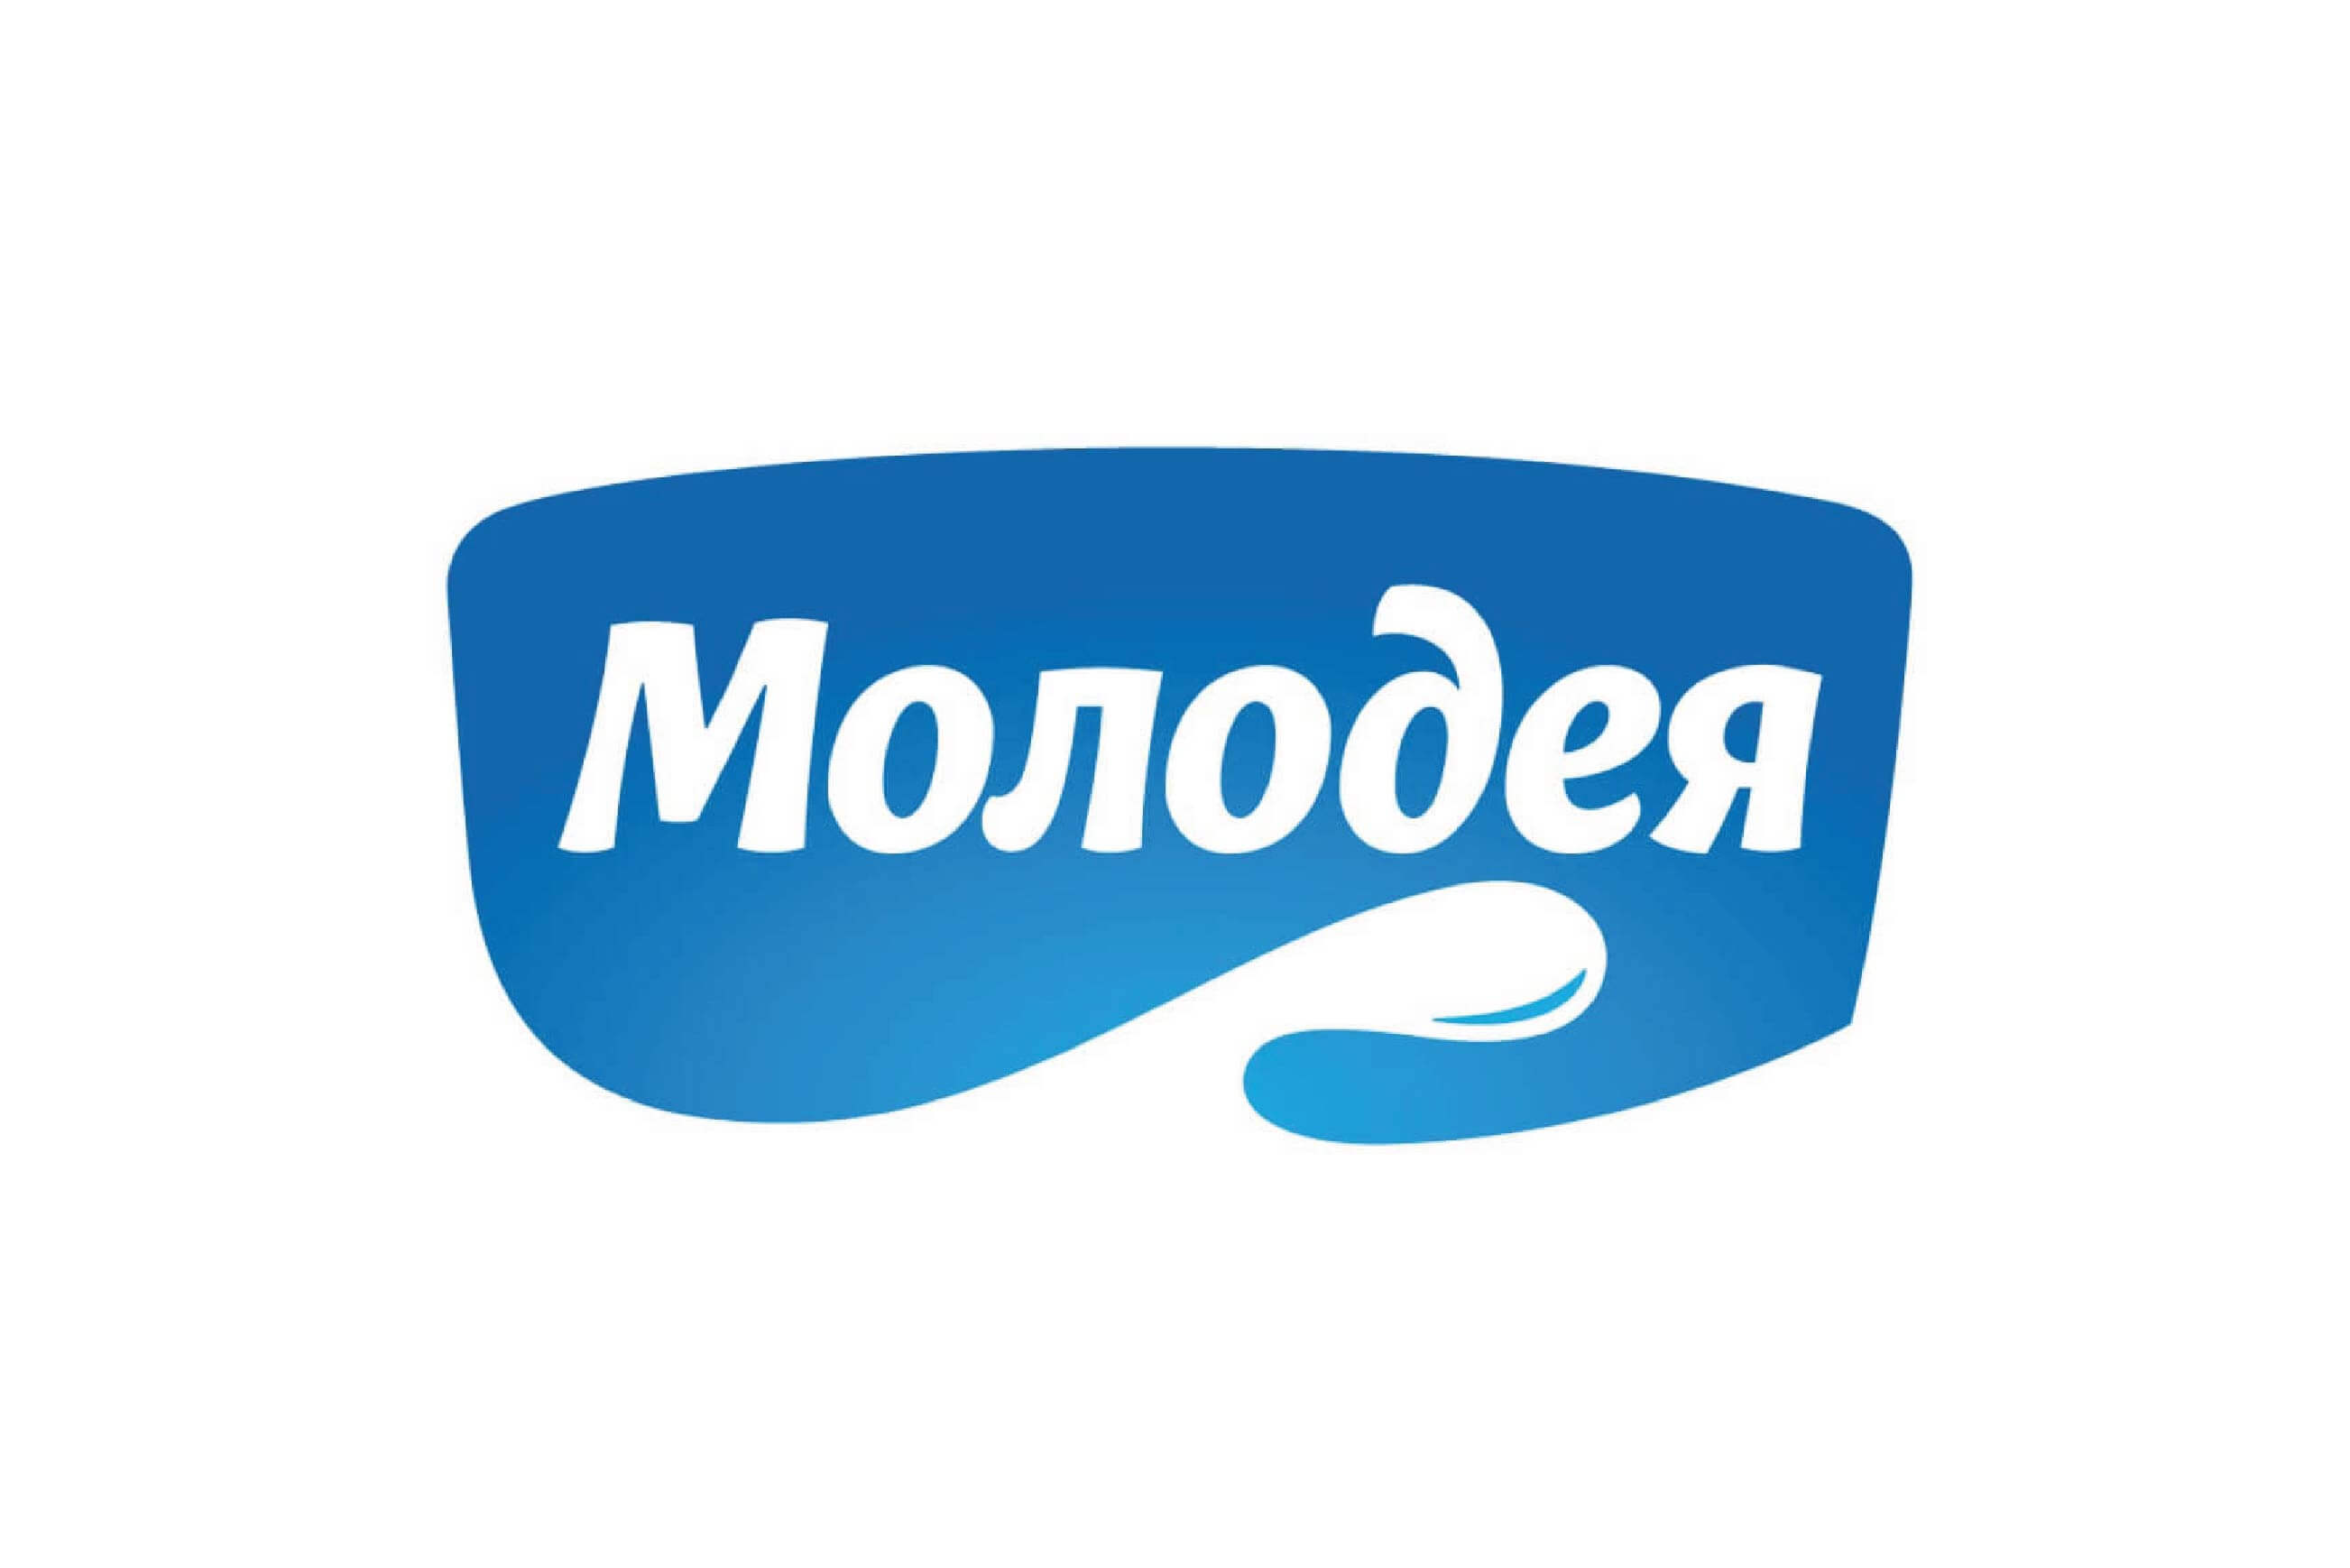 Molodeya logo